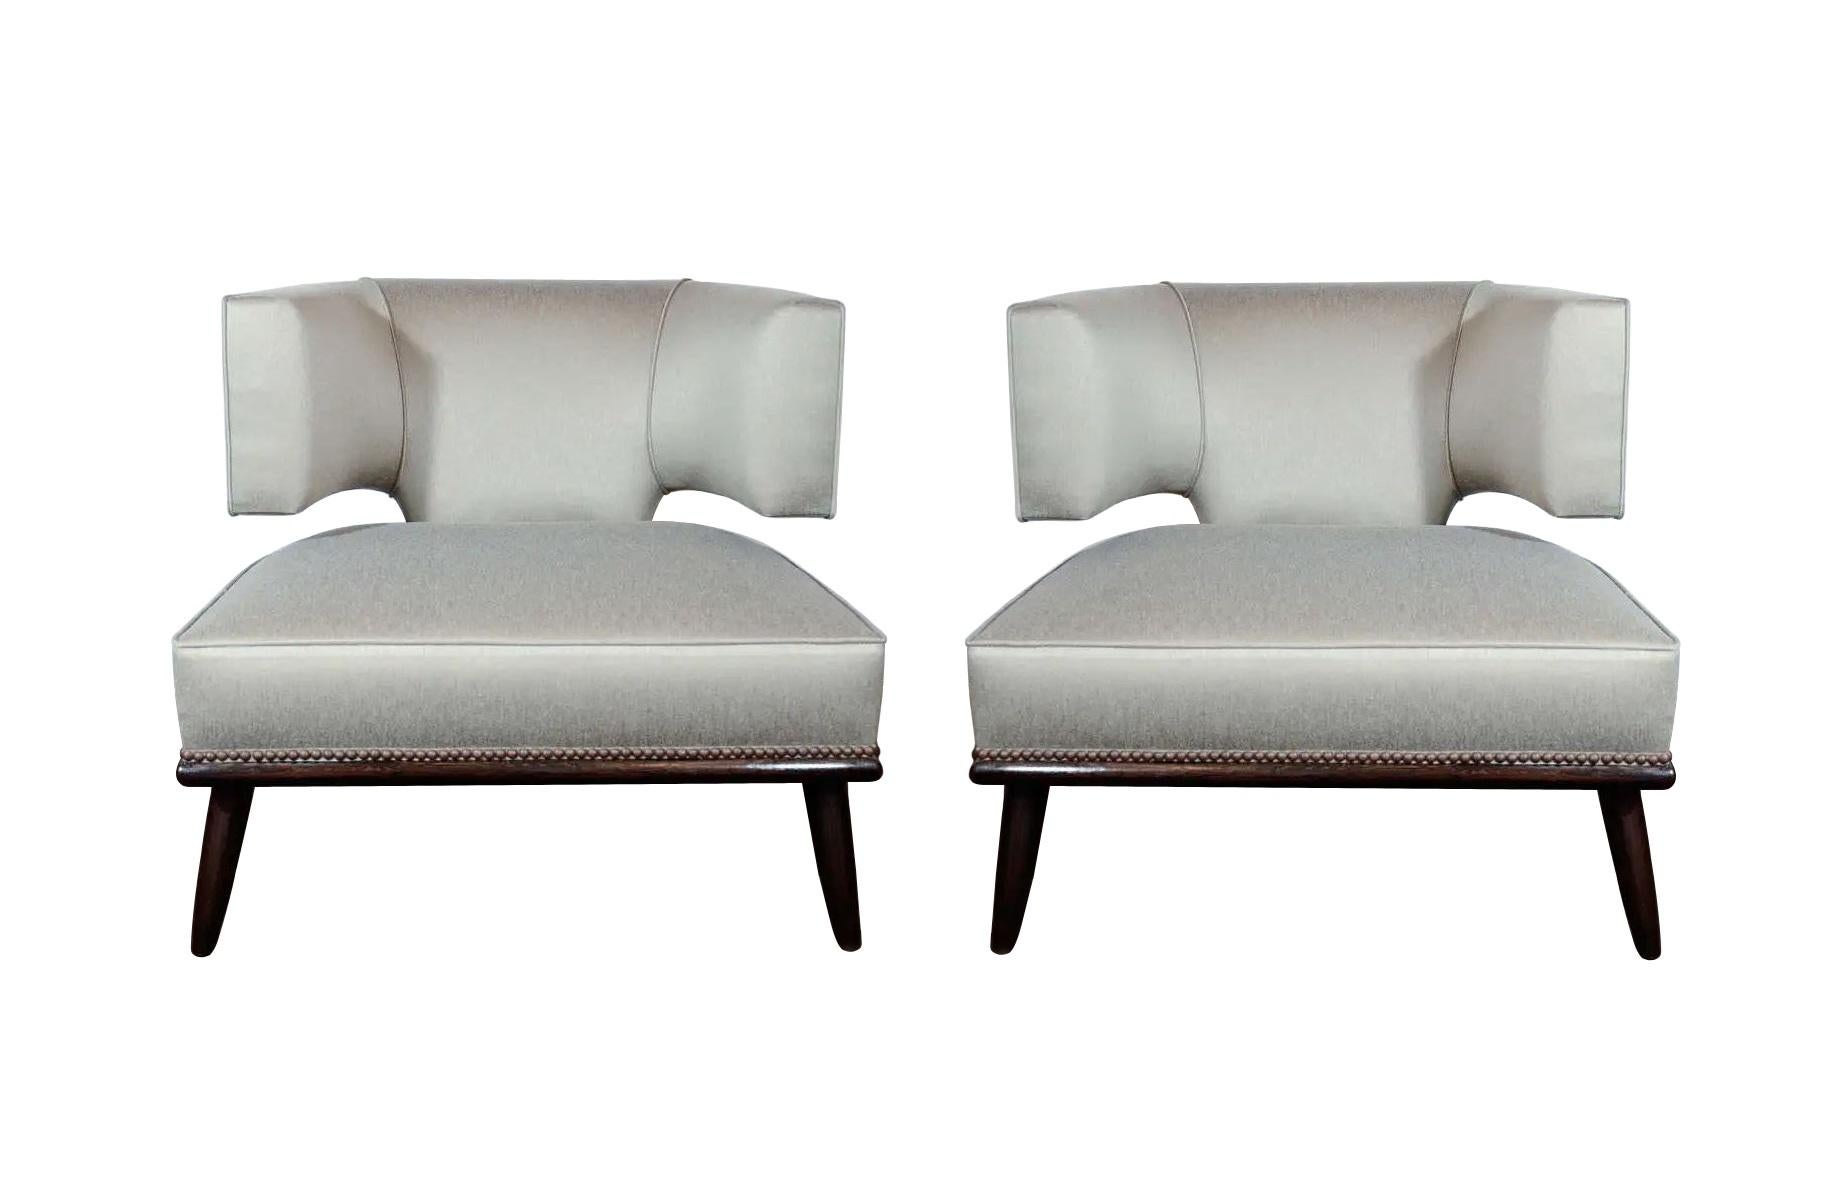 Ein fabelhaftes Paar skulpturaler Loungesessel mit klaren Linien, circa 1950er Jahre. Der fachmännisch gefertigte Sessel ist eine Neuinterpretation des klassischen Pantoffelstuhls mit seiner flachen Klismos-Form, die den Sitzenden umhüllt und